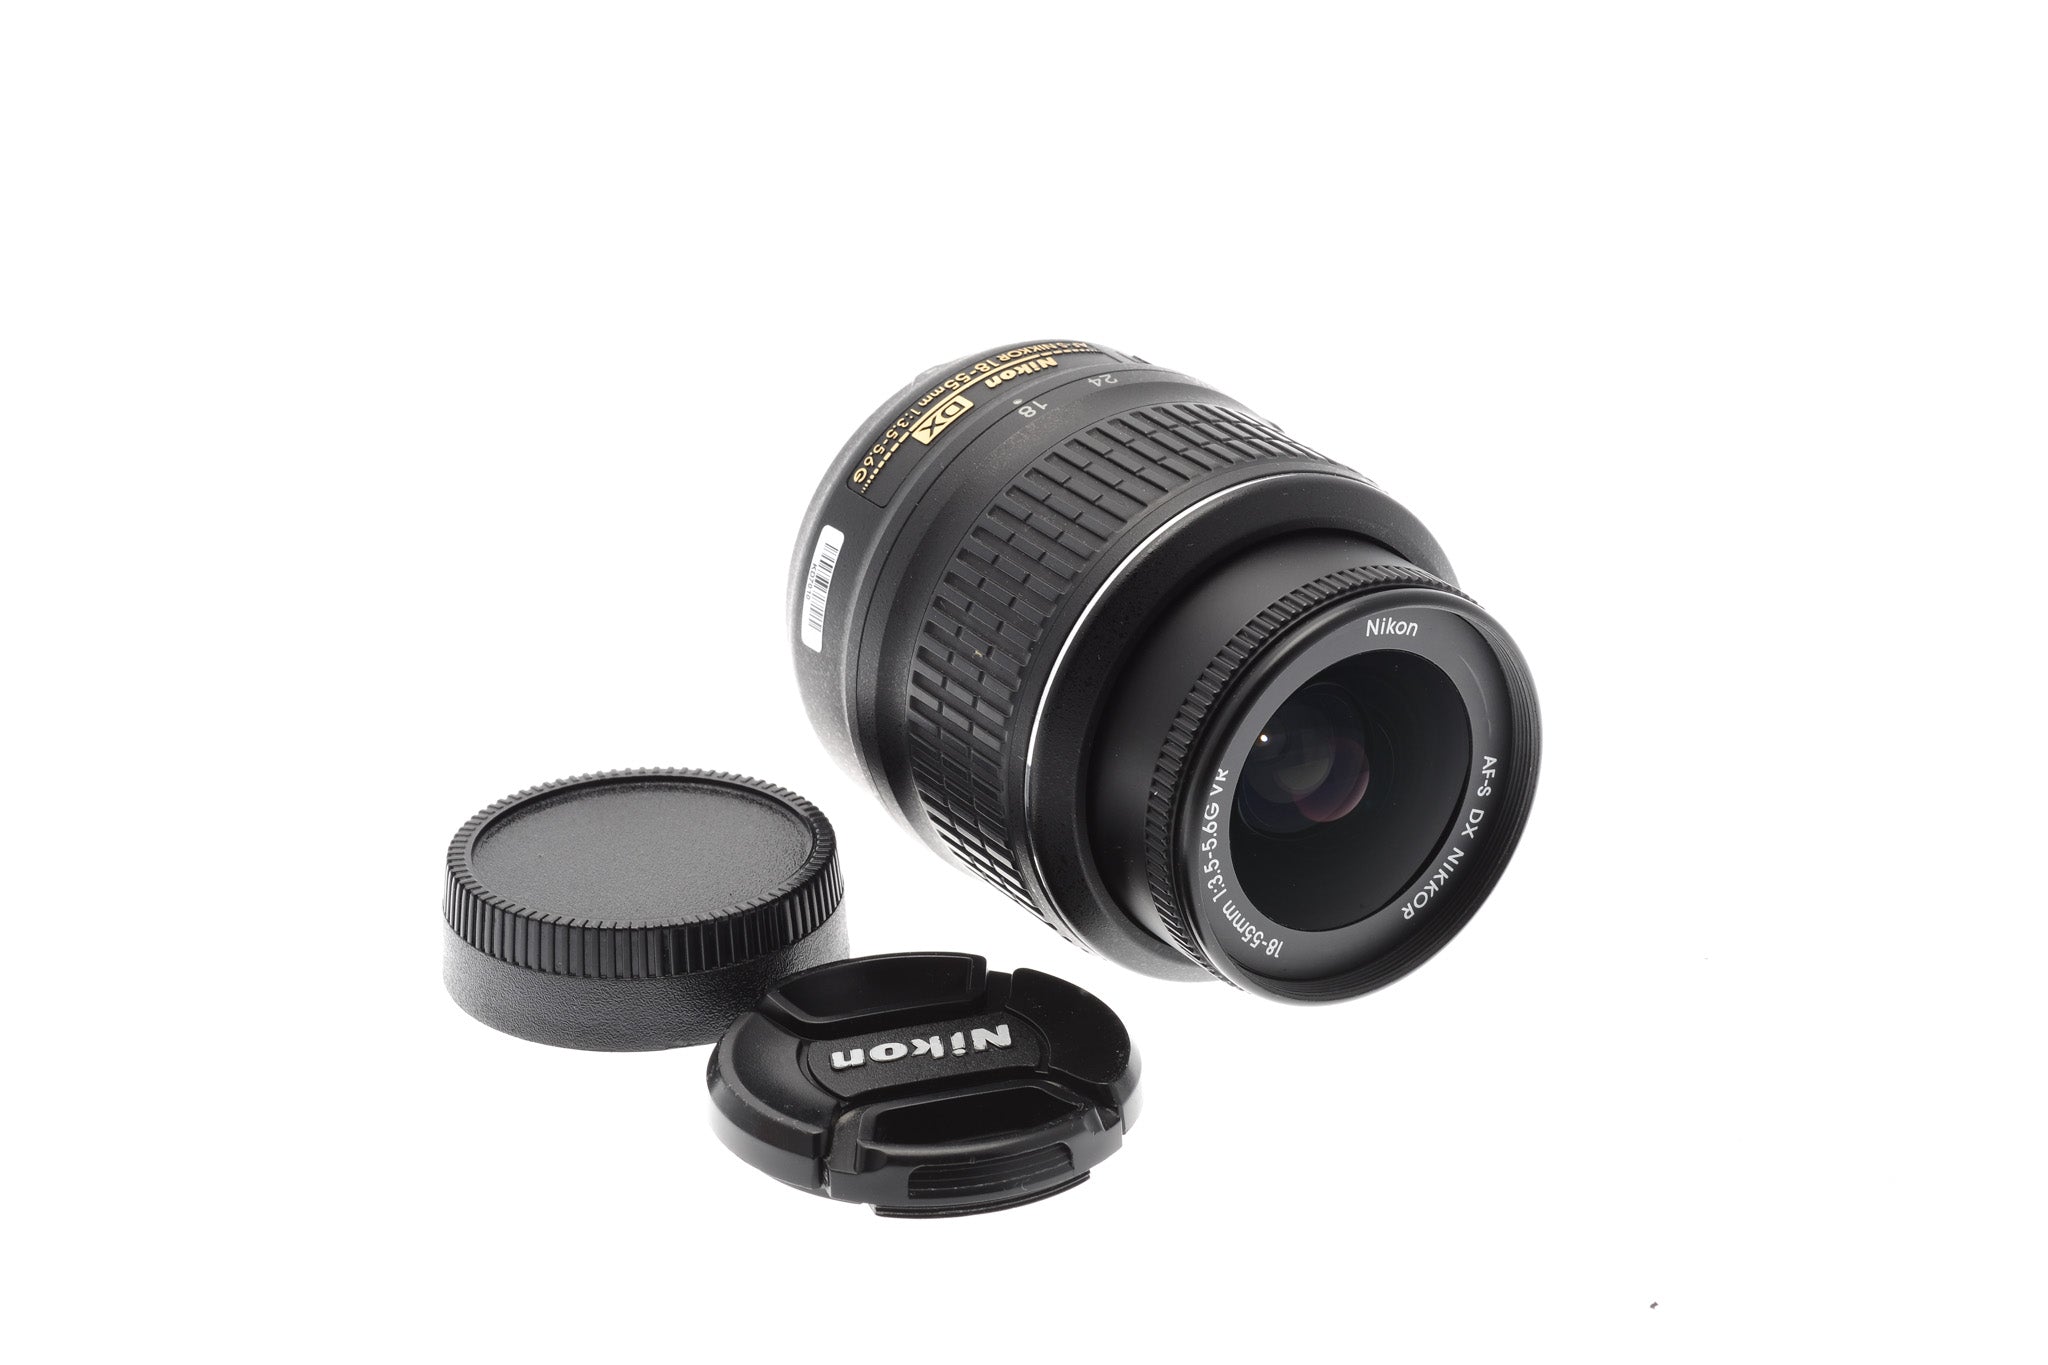 Nikon ニコンAF-S 18-55mm 3.5-5.6G VR - レンズ(ズーム)